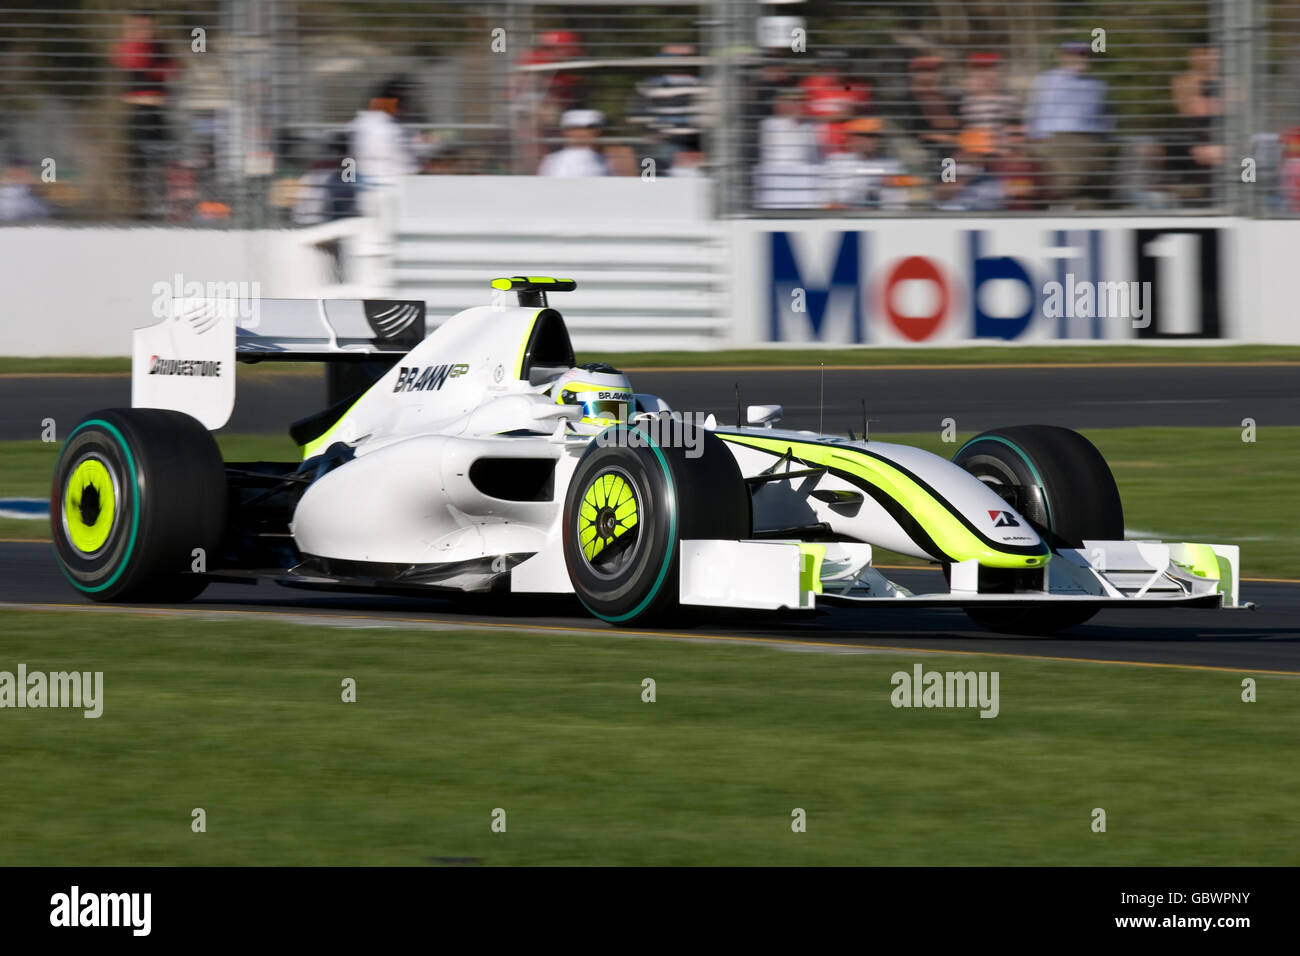 Rubens Barrichello, piloto del GP de Brawn, durante la primera práctica en Parque Albert Foto de stock